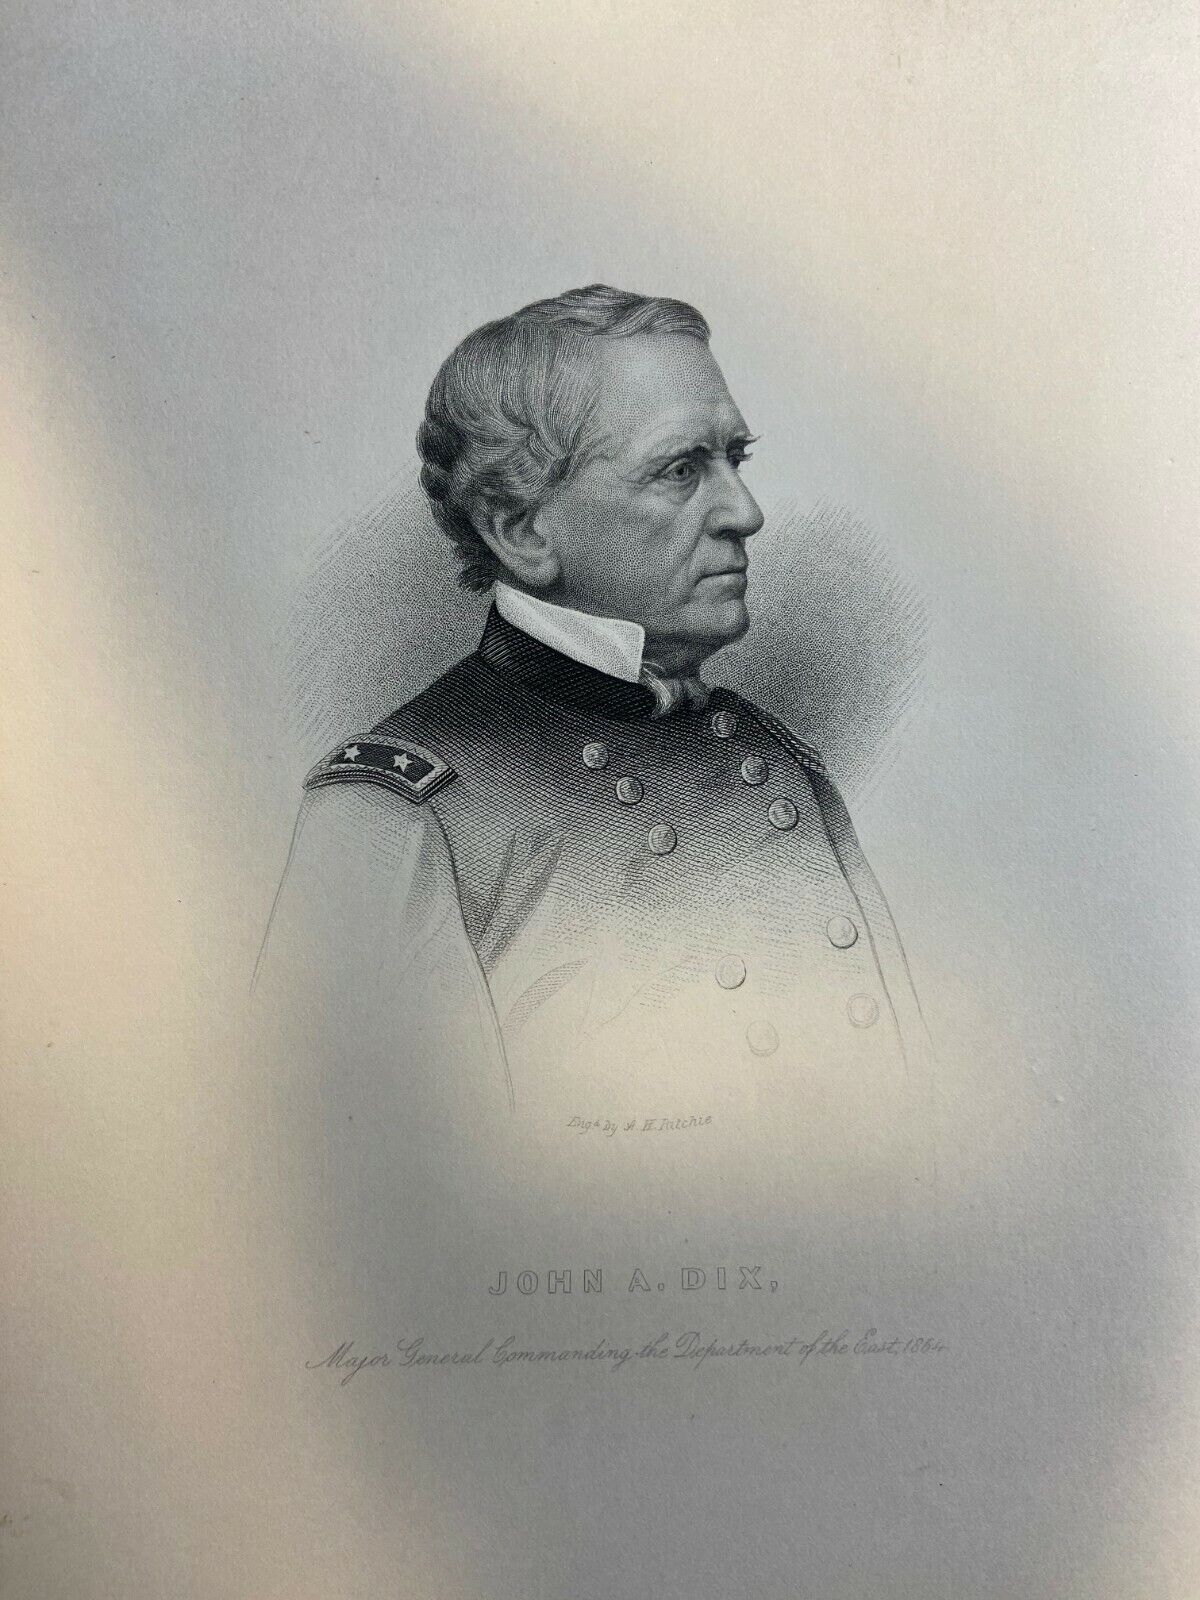 1885 Major General John A. Dix Civil War